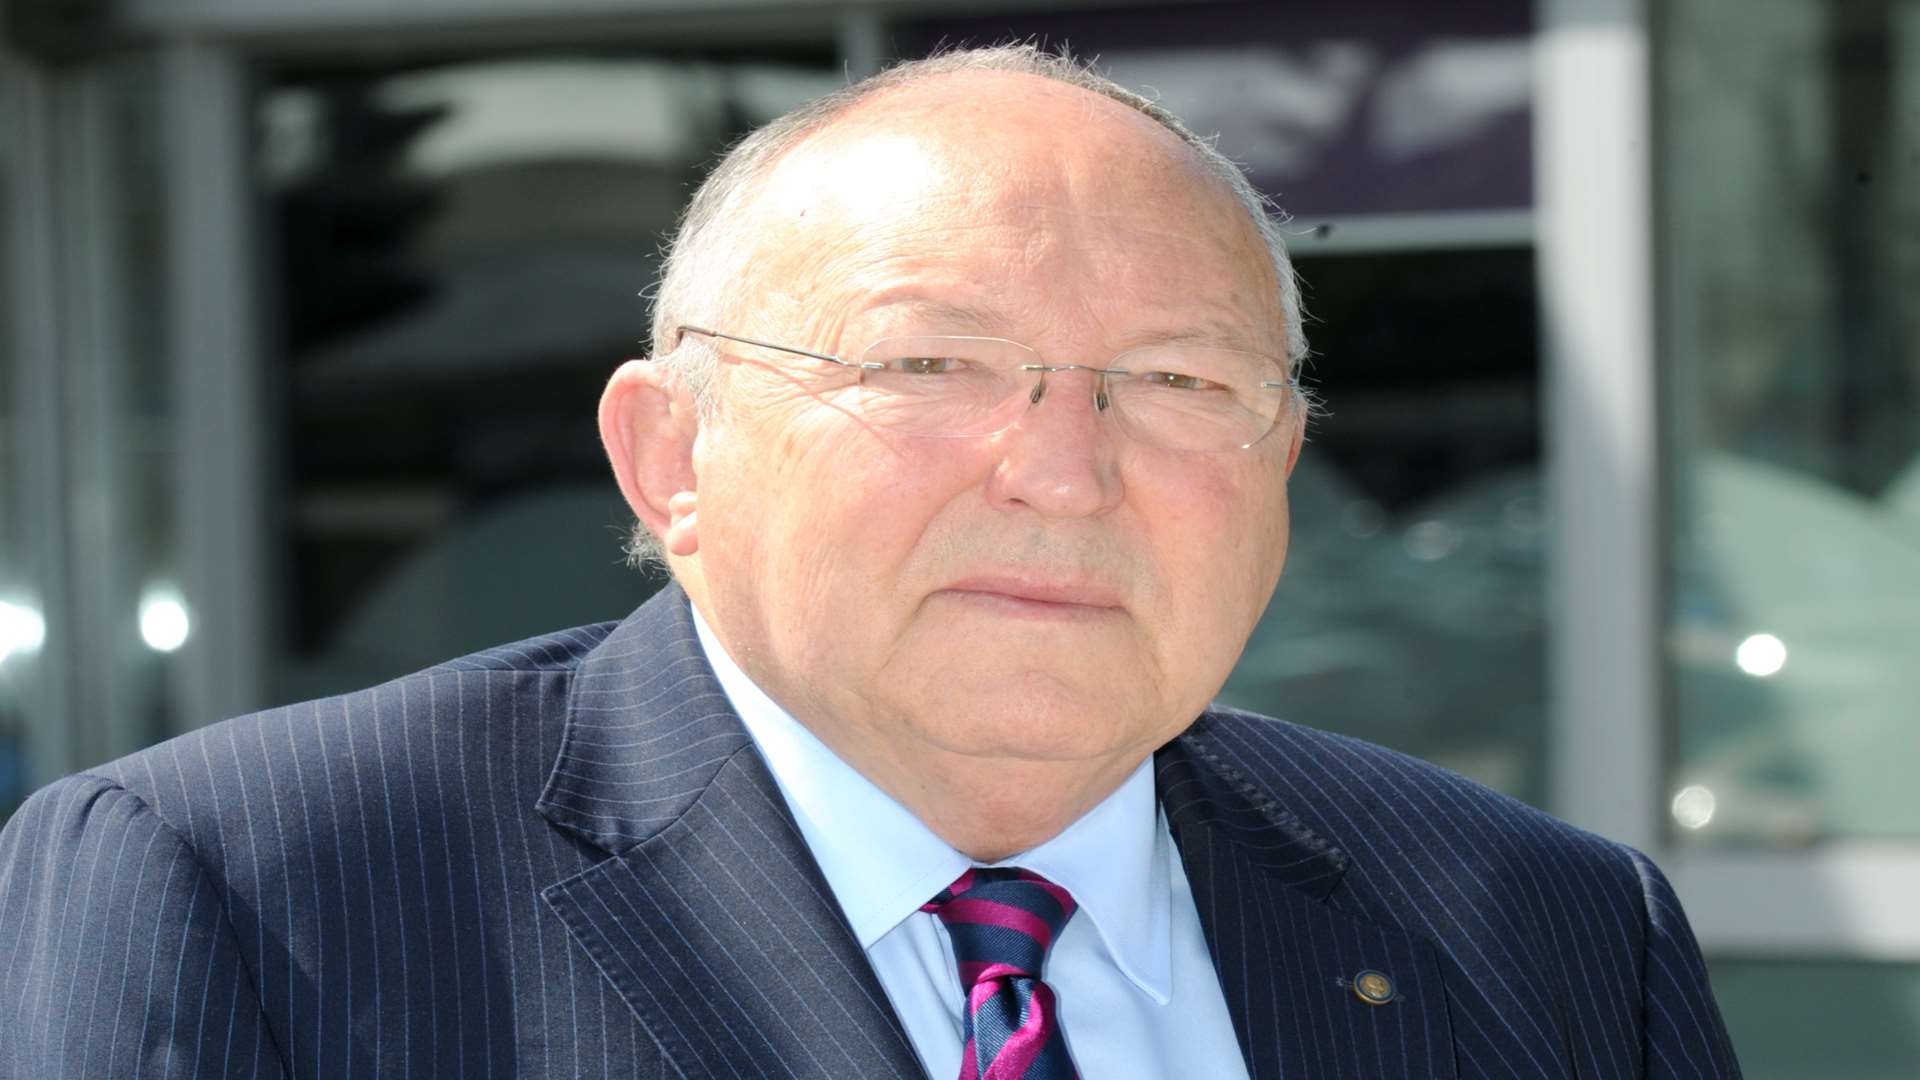 Gravesham Borough Council leader Cllr John Cubitt